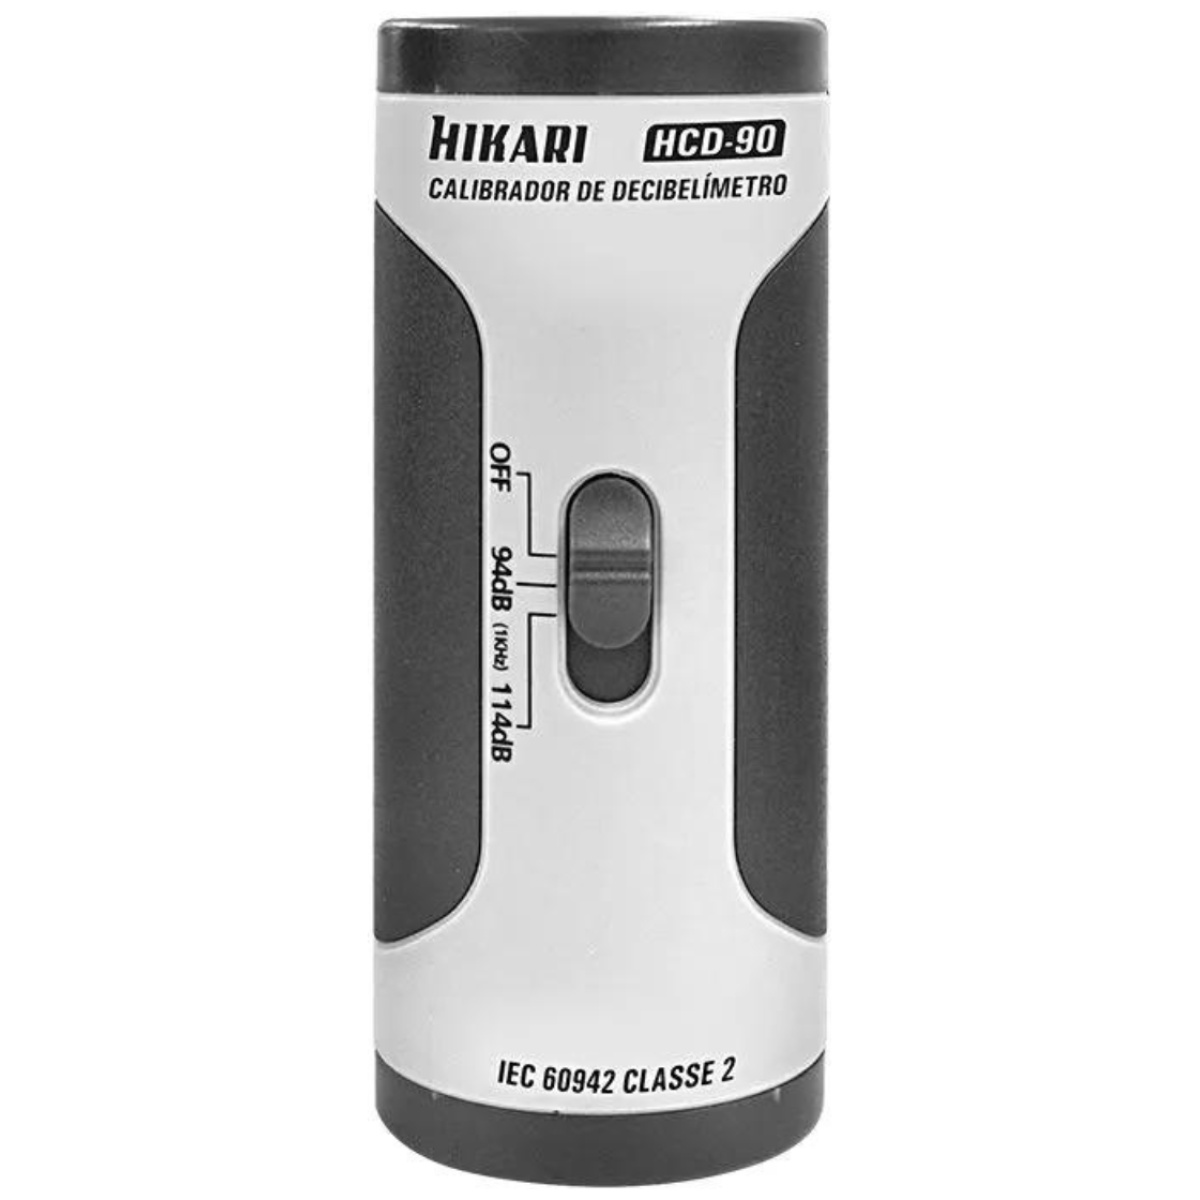 Calibrador de Decibelímetro e Dosímetro HCD-90 Hikari